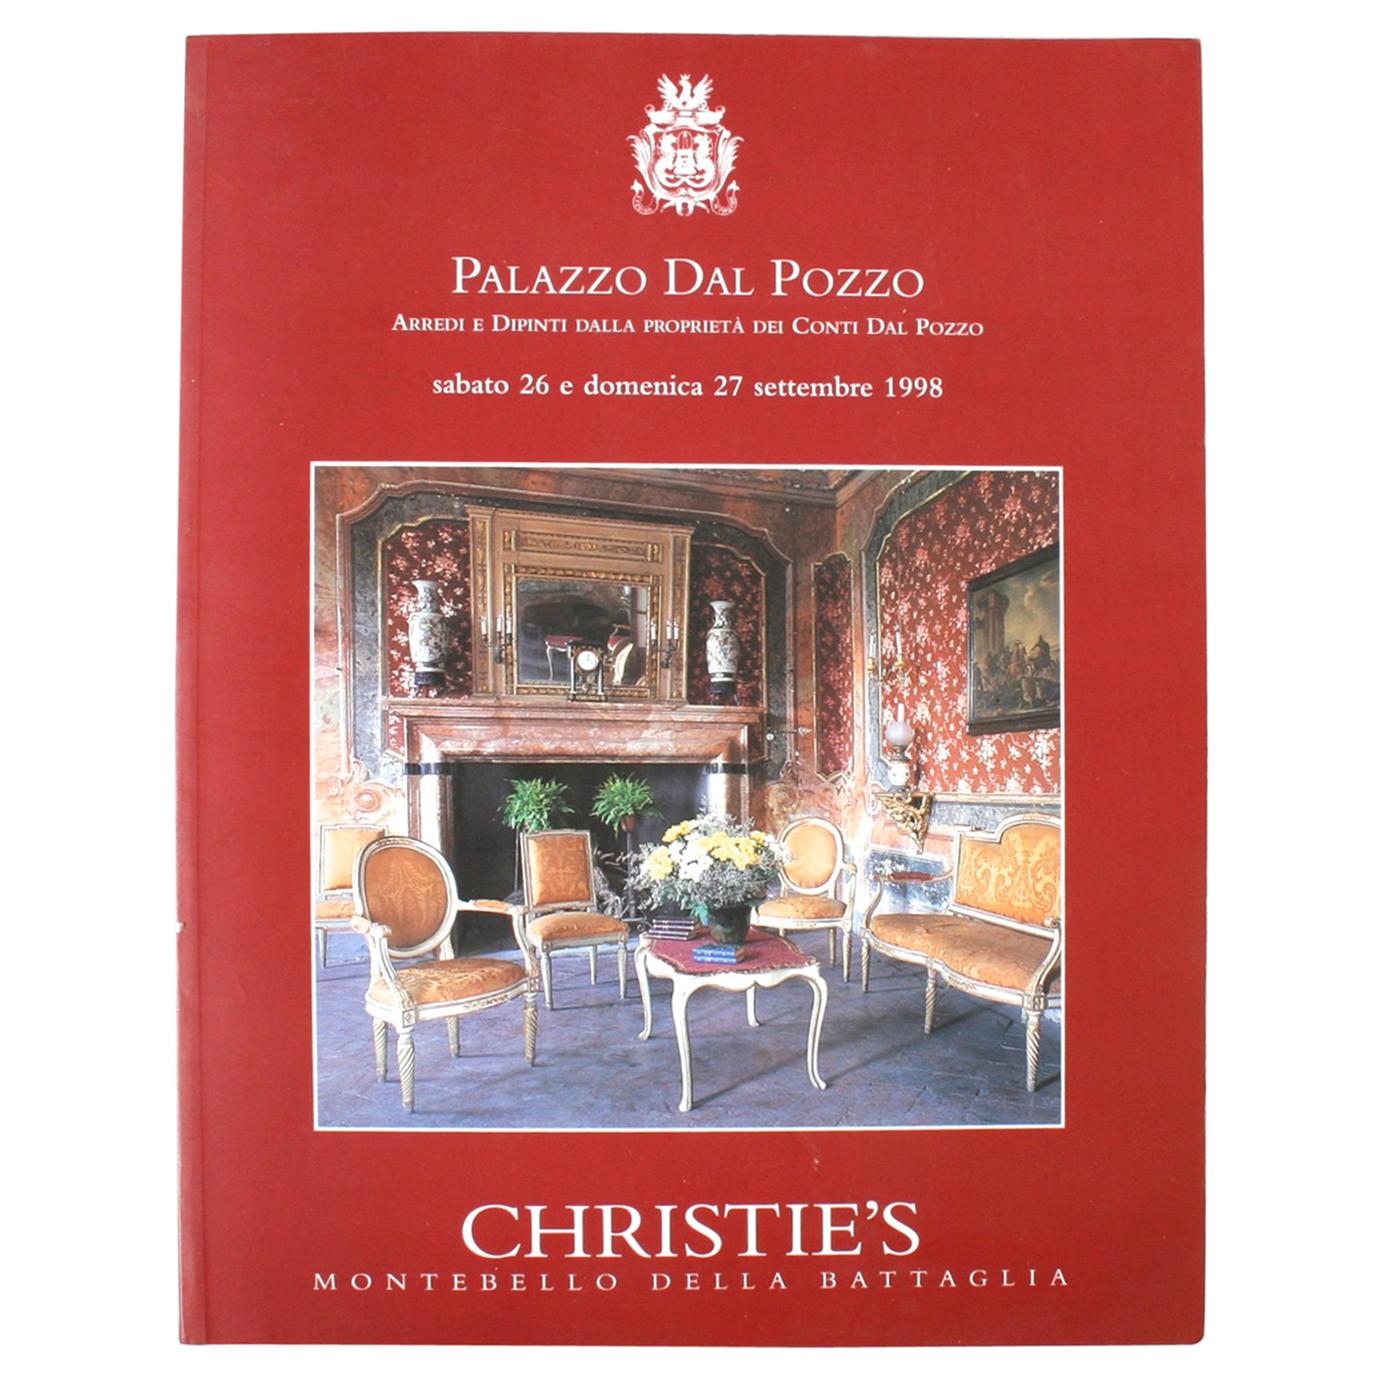 Christie's: Palazzo Dal Pozzo Arredi e Dipinti Dalla, September 1998